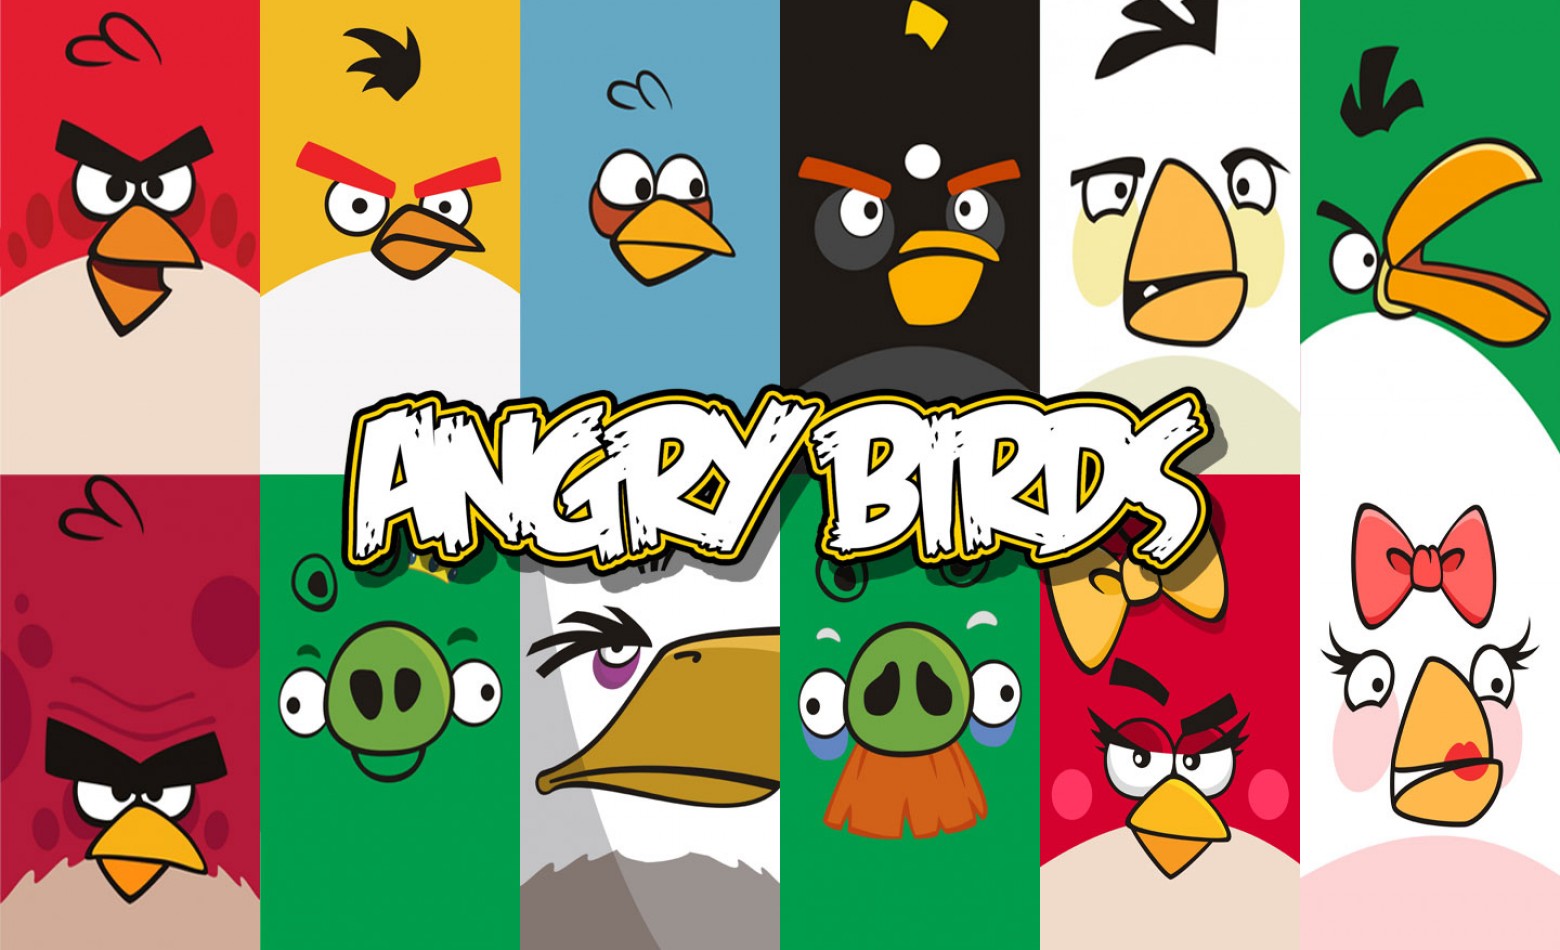 Desenvolvedora de Angry Birds demite 15% de seus funcionários